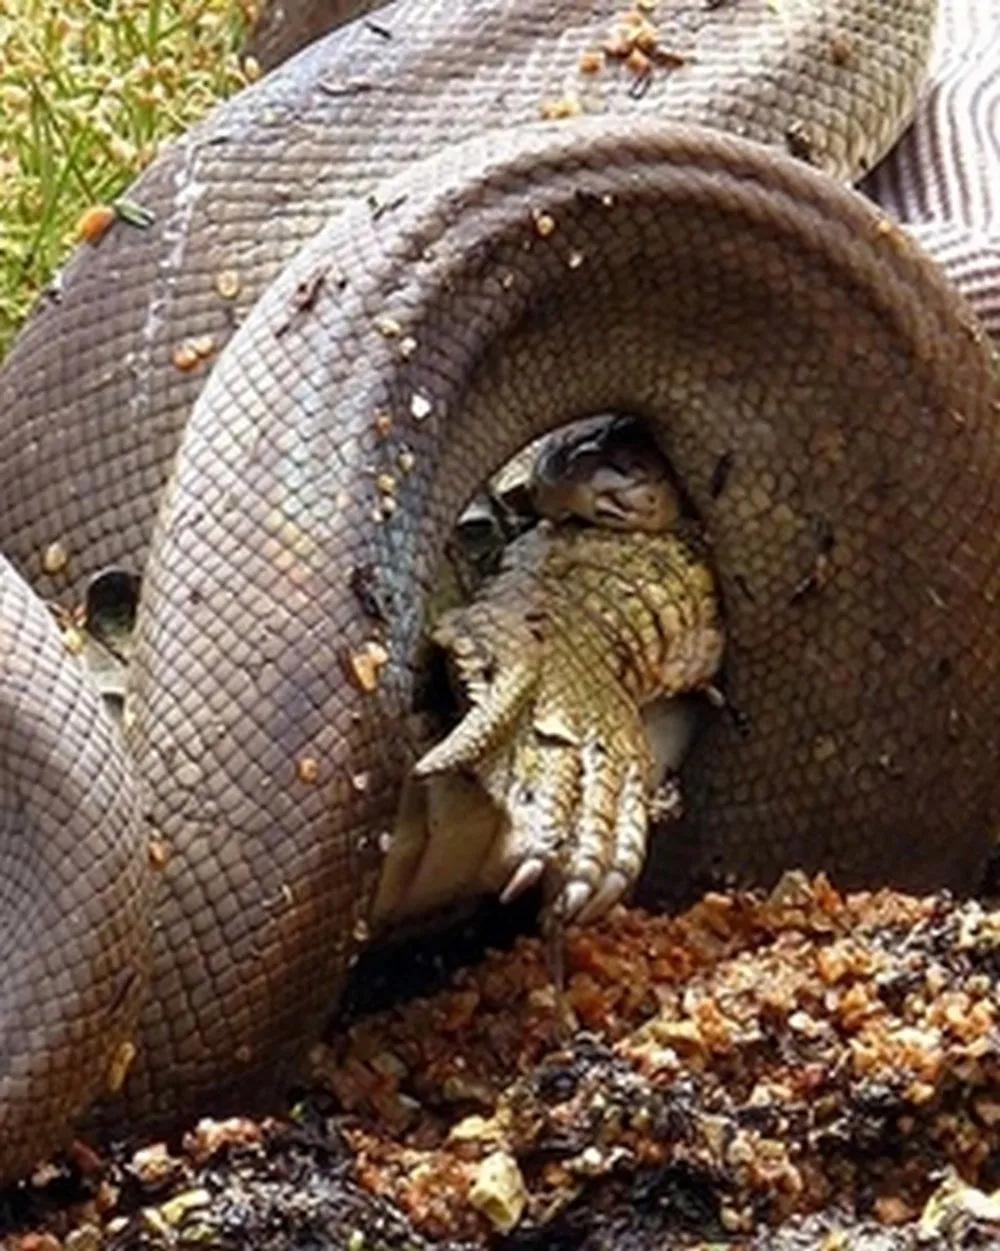 Почему змеи боятся